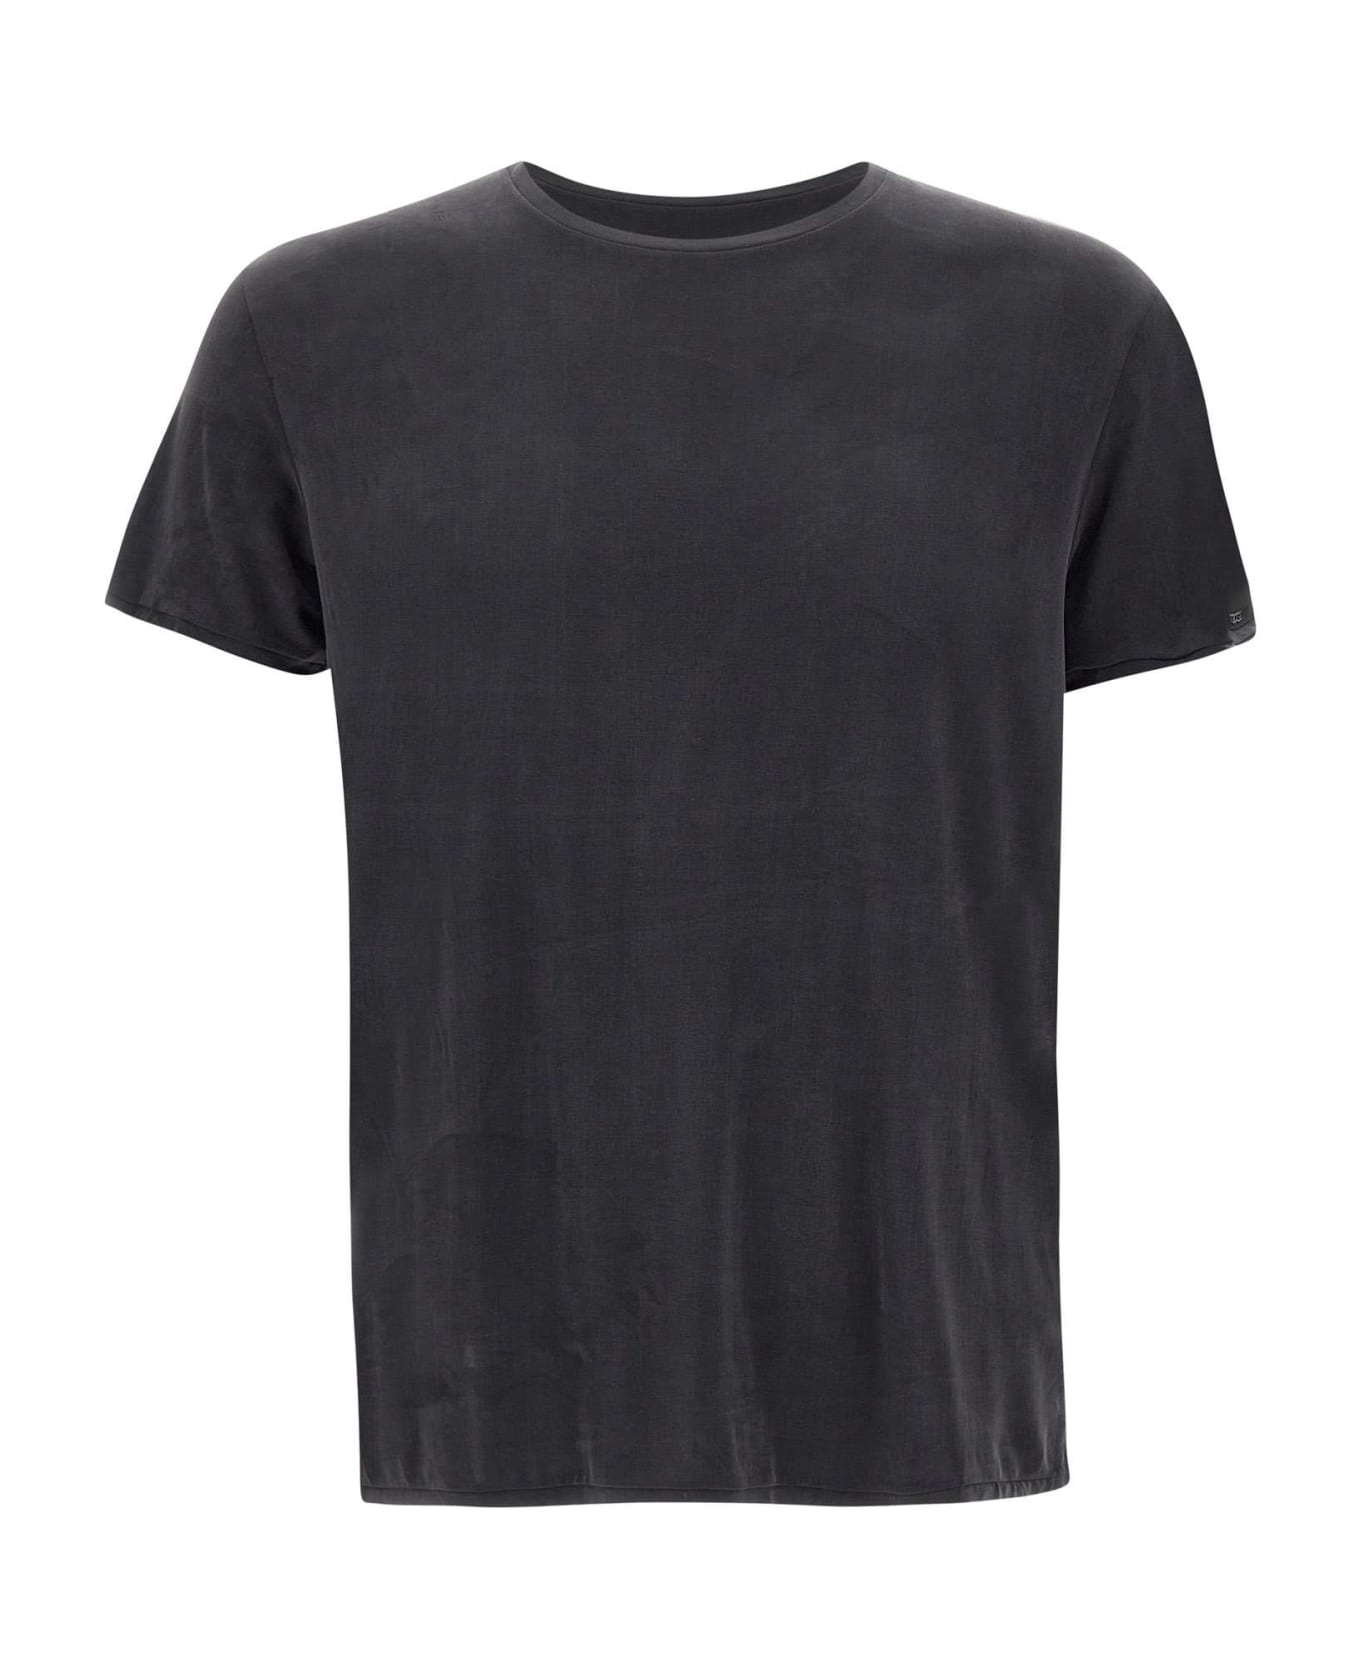 RRD - Roberto Ricci Design 'cupro Shirty' T-shirt - Black